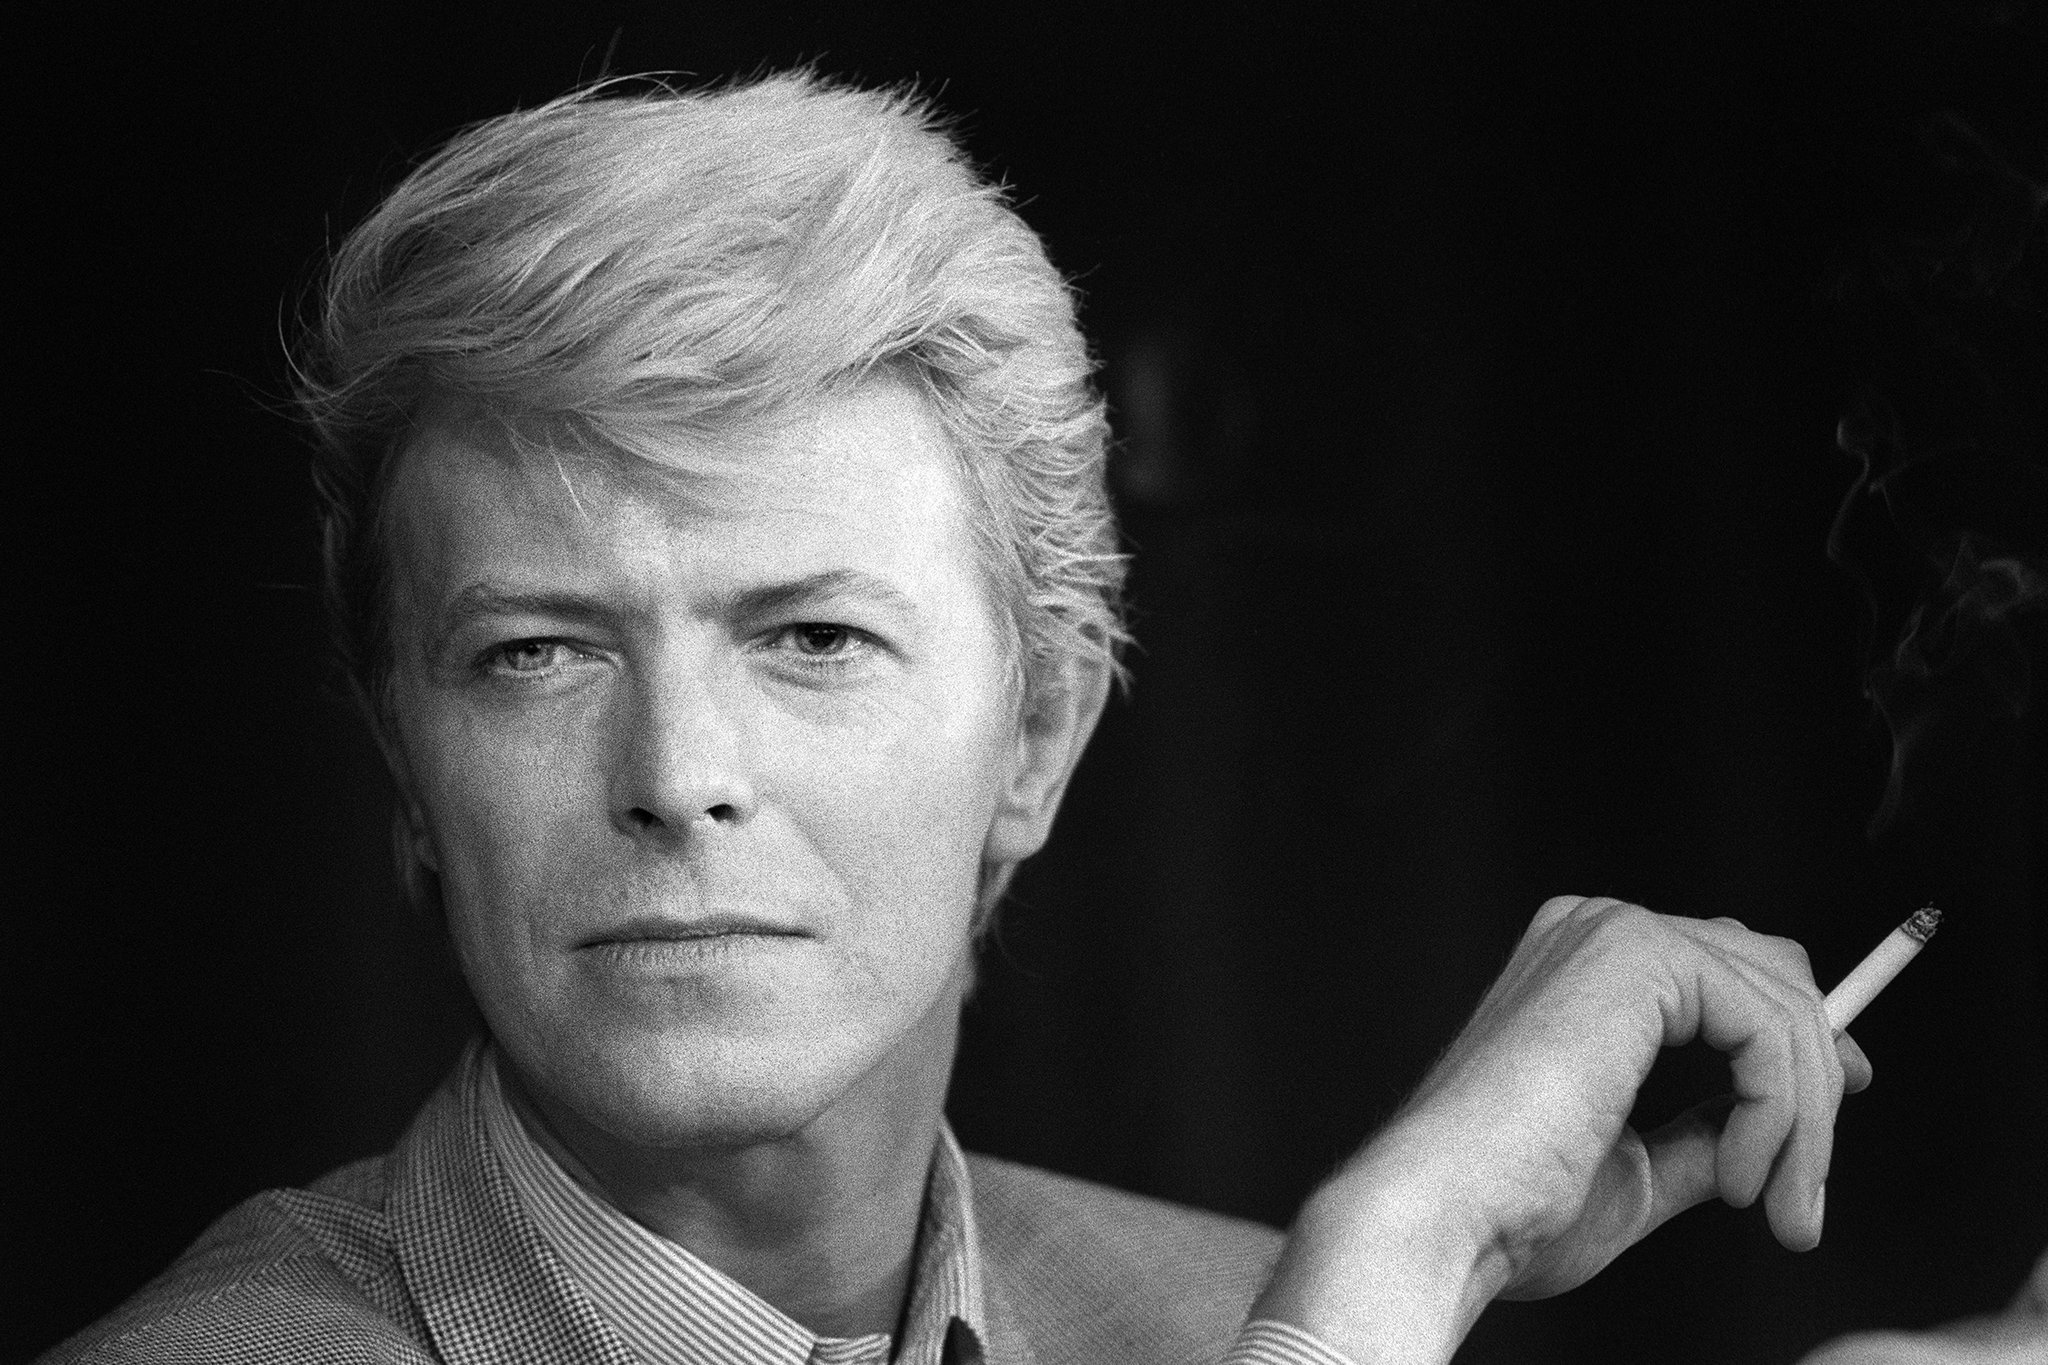 David Bowie Estate apresentou NFTs inspirados em Bowie que serão lançados na próxima semana